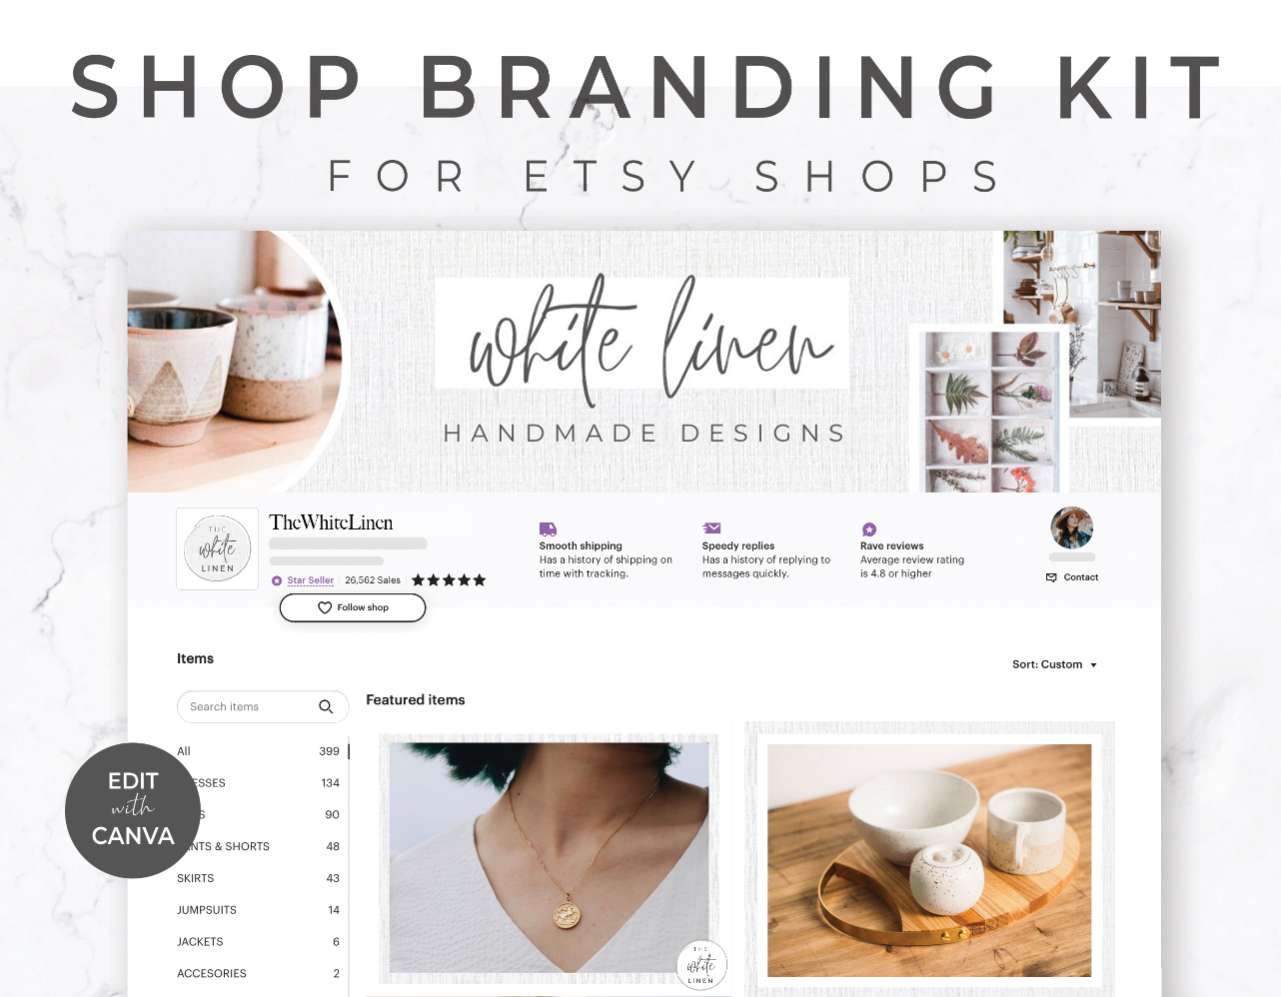 Etsy Shop Branding Kit for Canva - White Linen